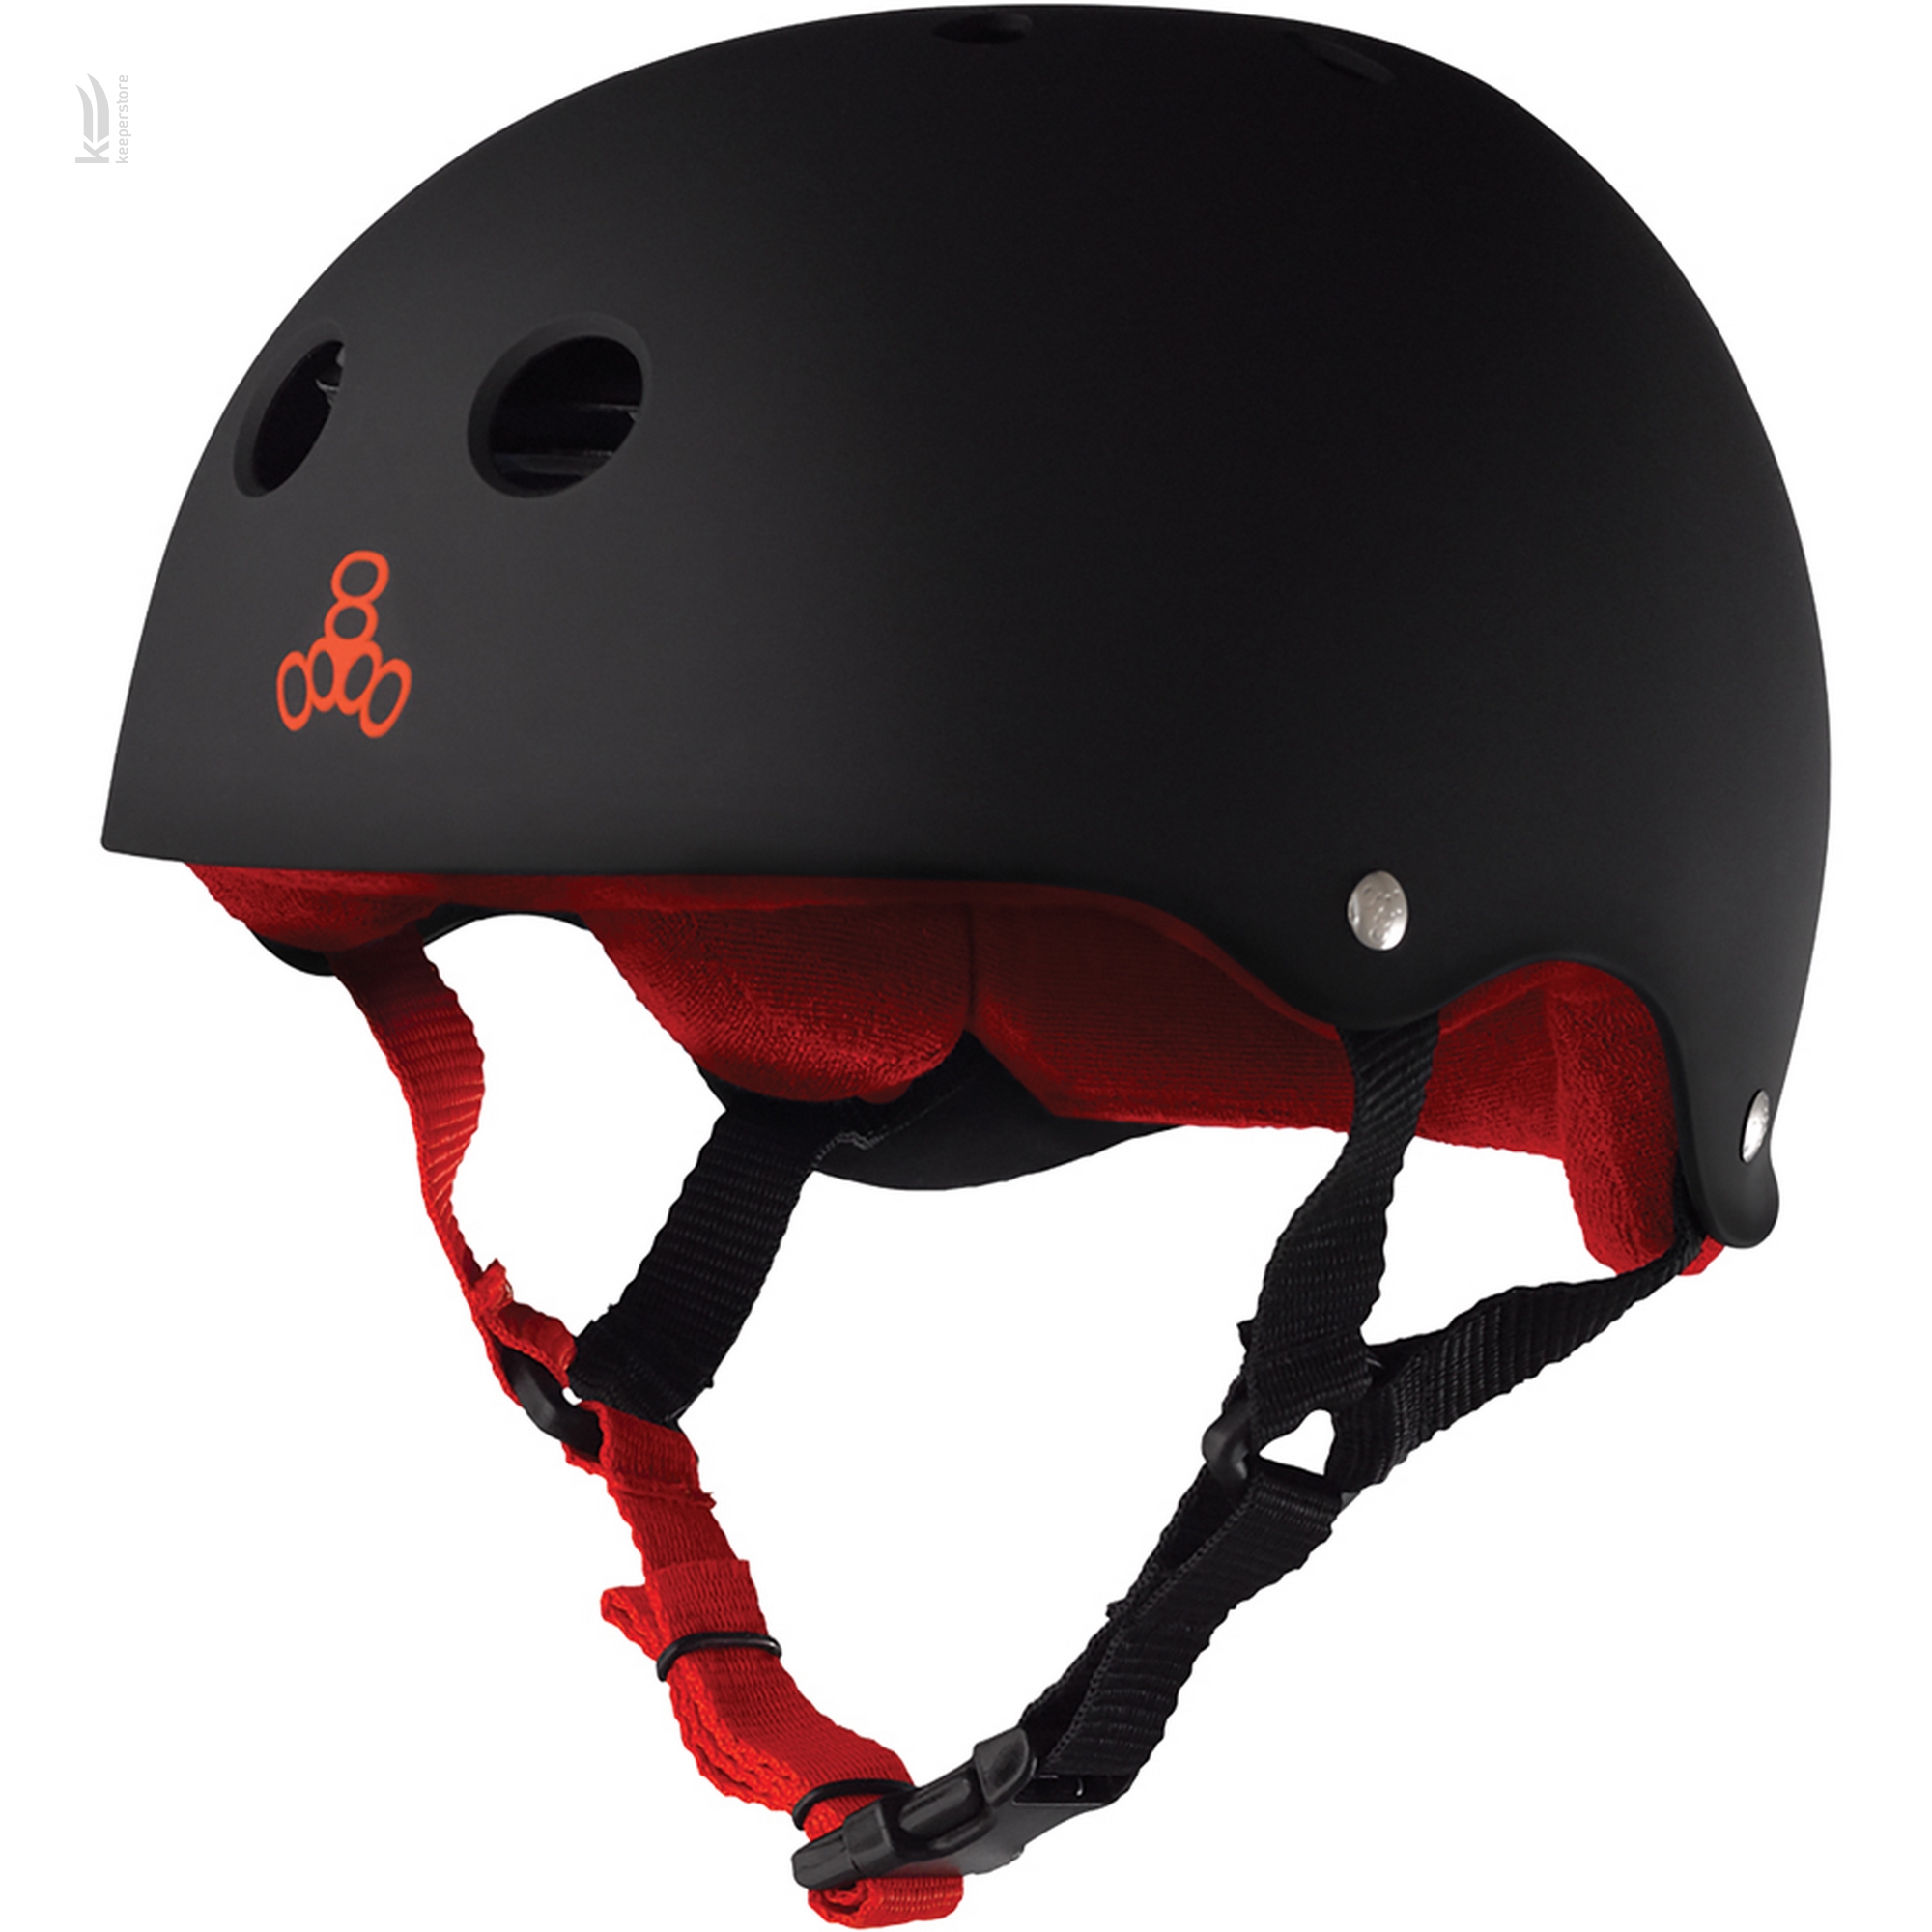 Детский шлем для роликов Triple8 Sweatsaver Helmet Black w/ Red (L)